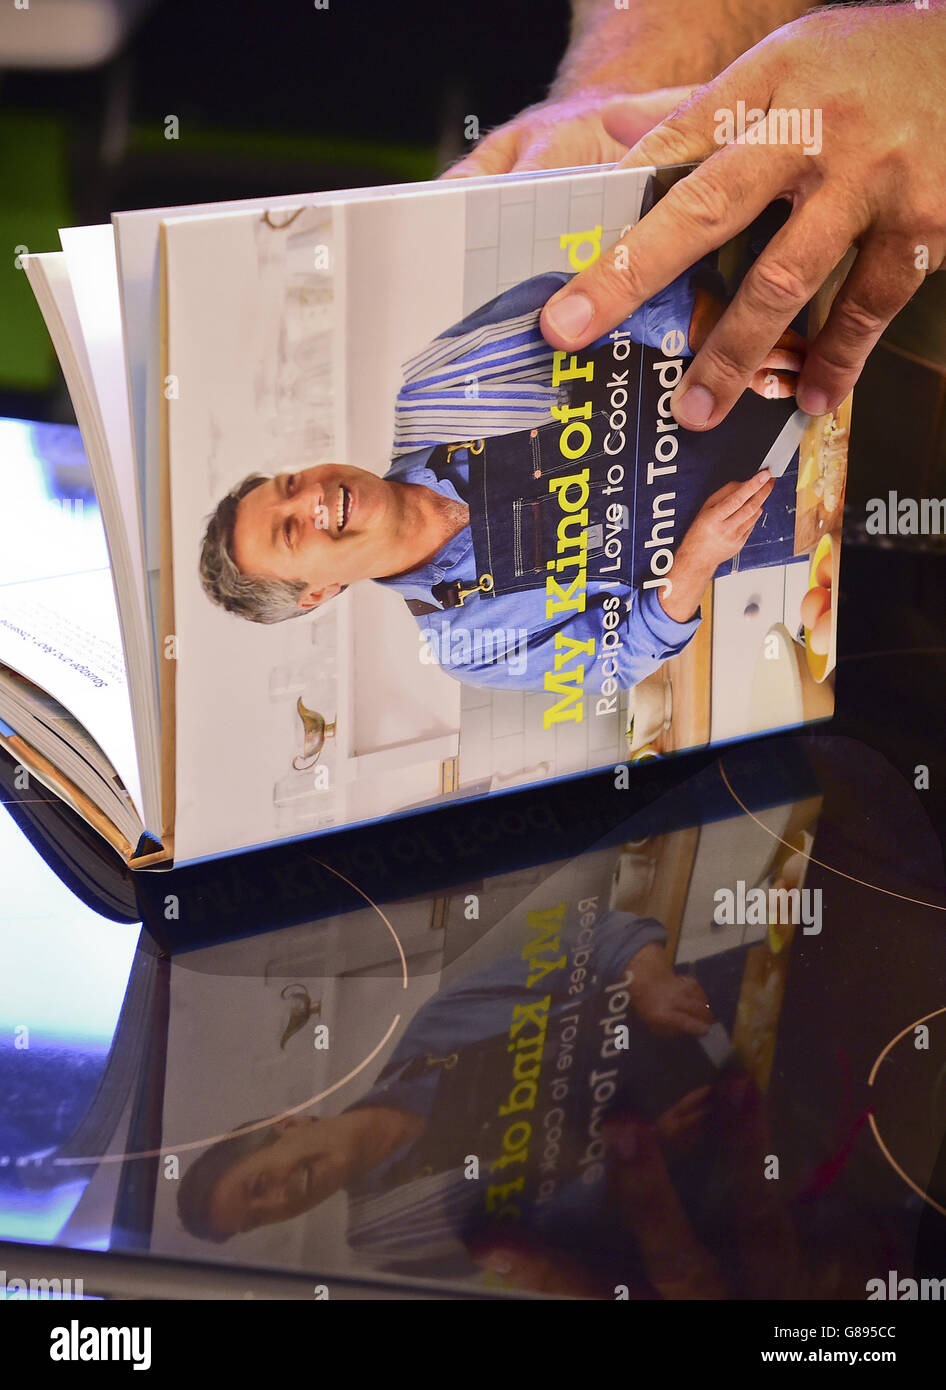 John Torode veröffentlicht sein neues Buch My Kind of Food an der Central Street Cookery School, London. DRÜCKEN Sie VERBANDSFOTO. Bilddatum: Donnerstag, 10. September 2015. Bildnachweis sollte lauten: Ian West/PA Wire Stockfoto